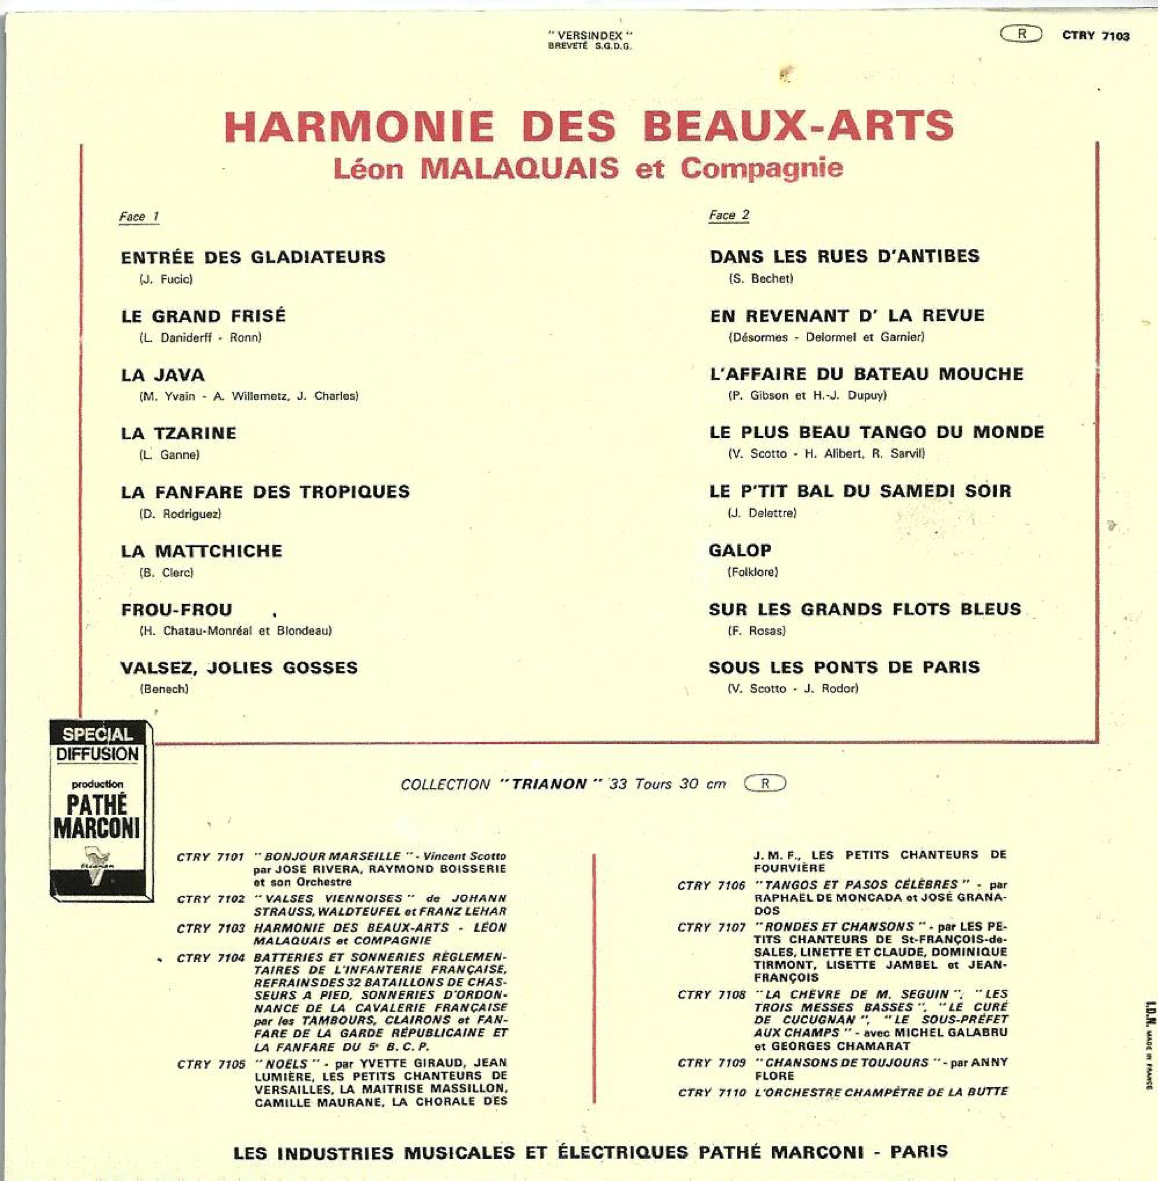 1967_DISQUE_CRTY7103_Harmonie-des-Beaux-Arts_Verso_Premiere-Reedition.png